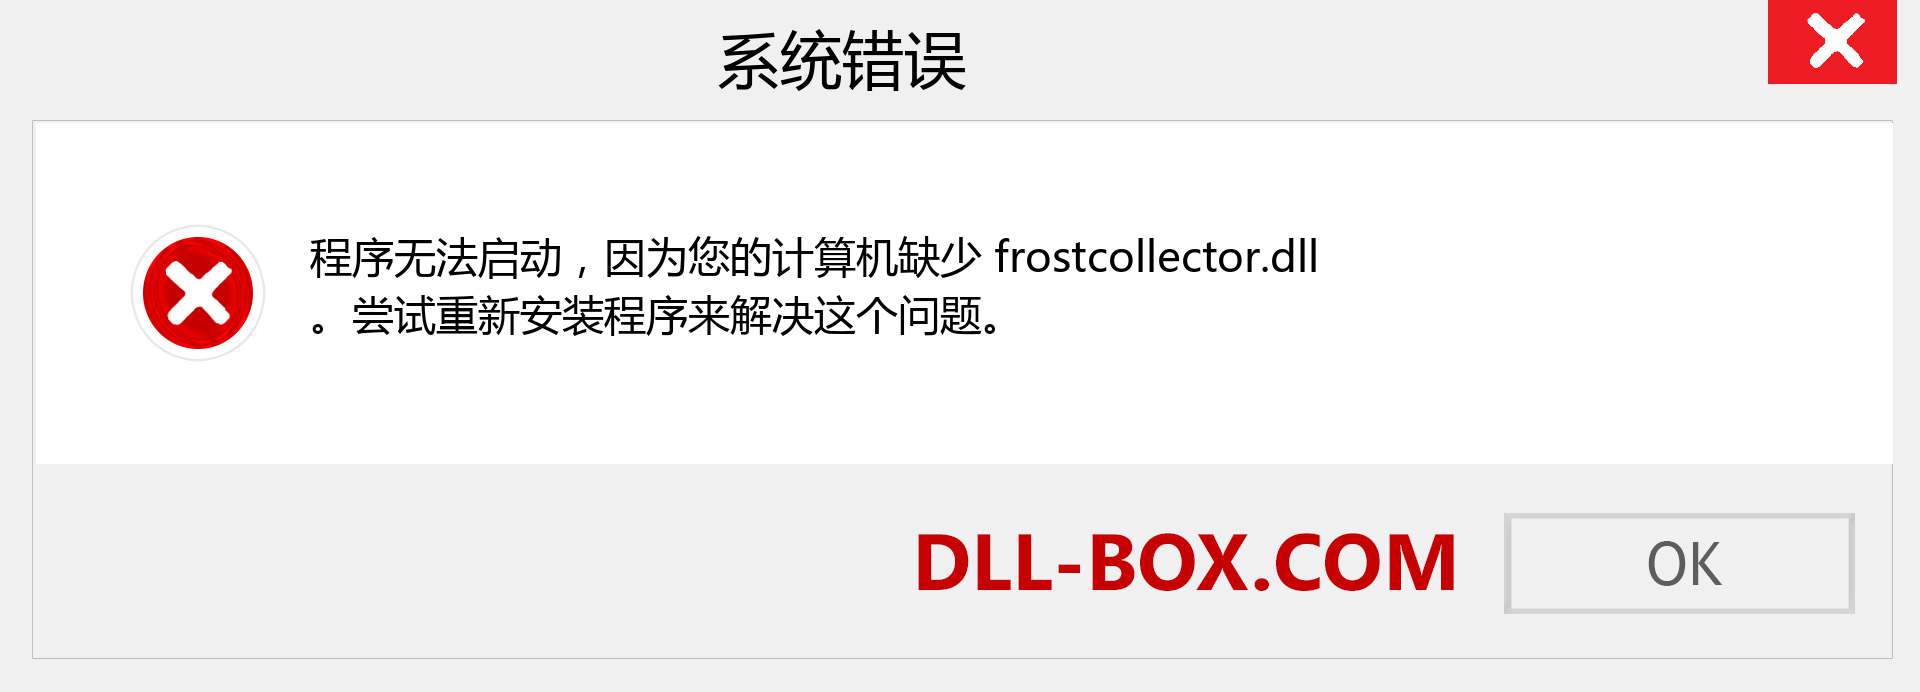 frostcollector.dll 文件丢失？。 适用于 Windows 7、8、10 的下载 - 修复 Windows、照片、图像上的 frostcollector dll 丢失错误